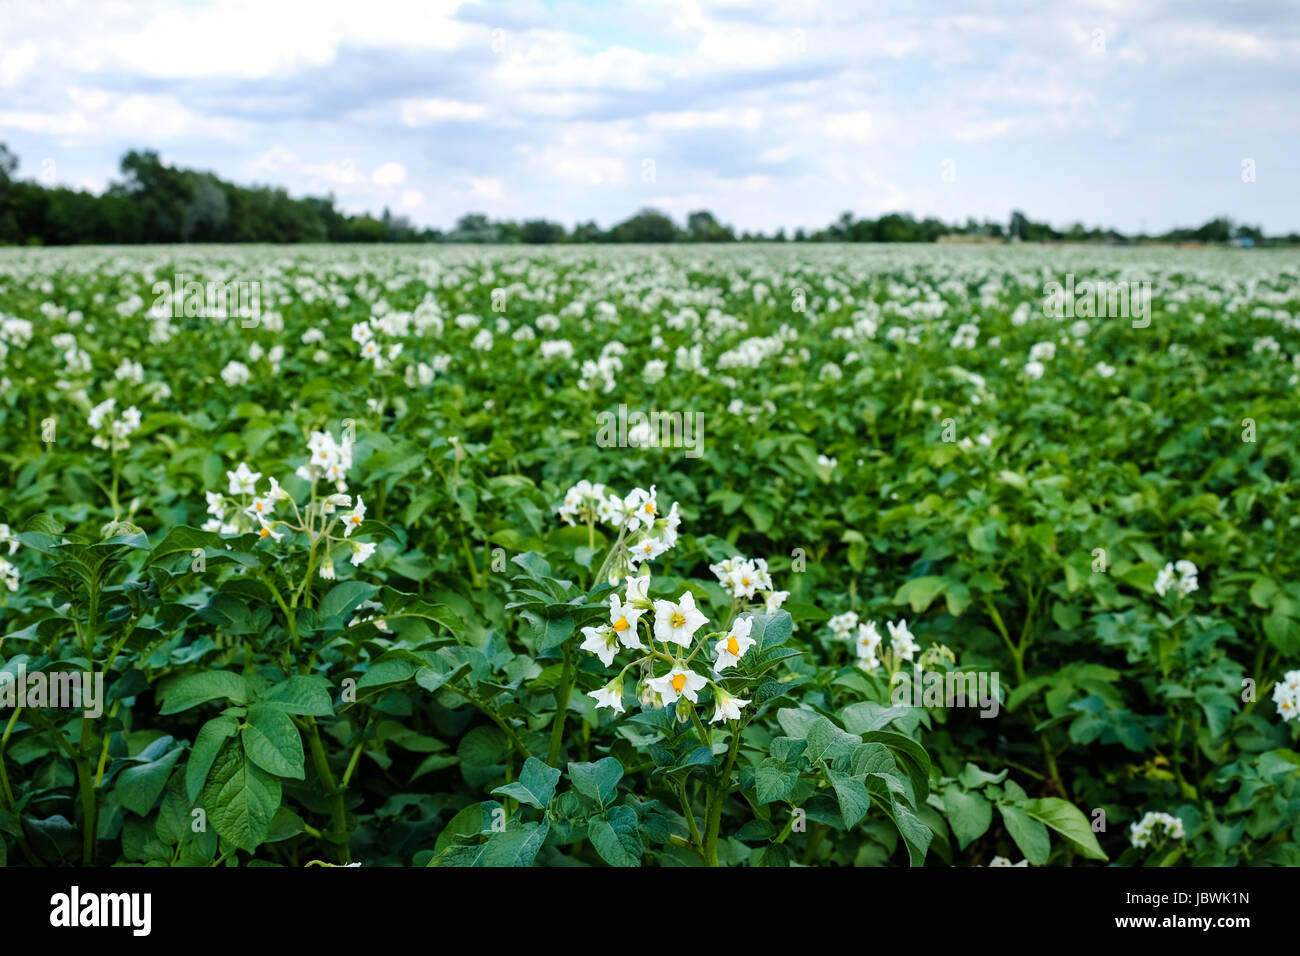 Kartoffelpflanze mit Blüte, landwirtschaftliches Feld mit Nutzpflanze Foto Stock